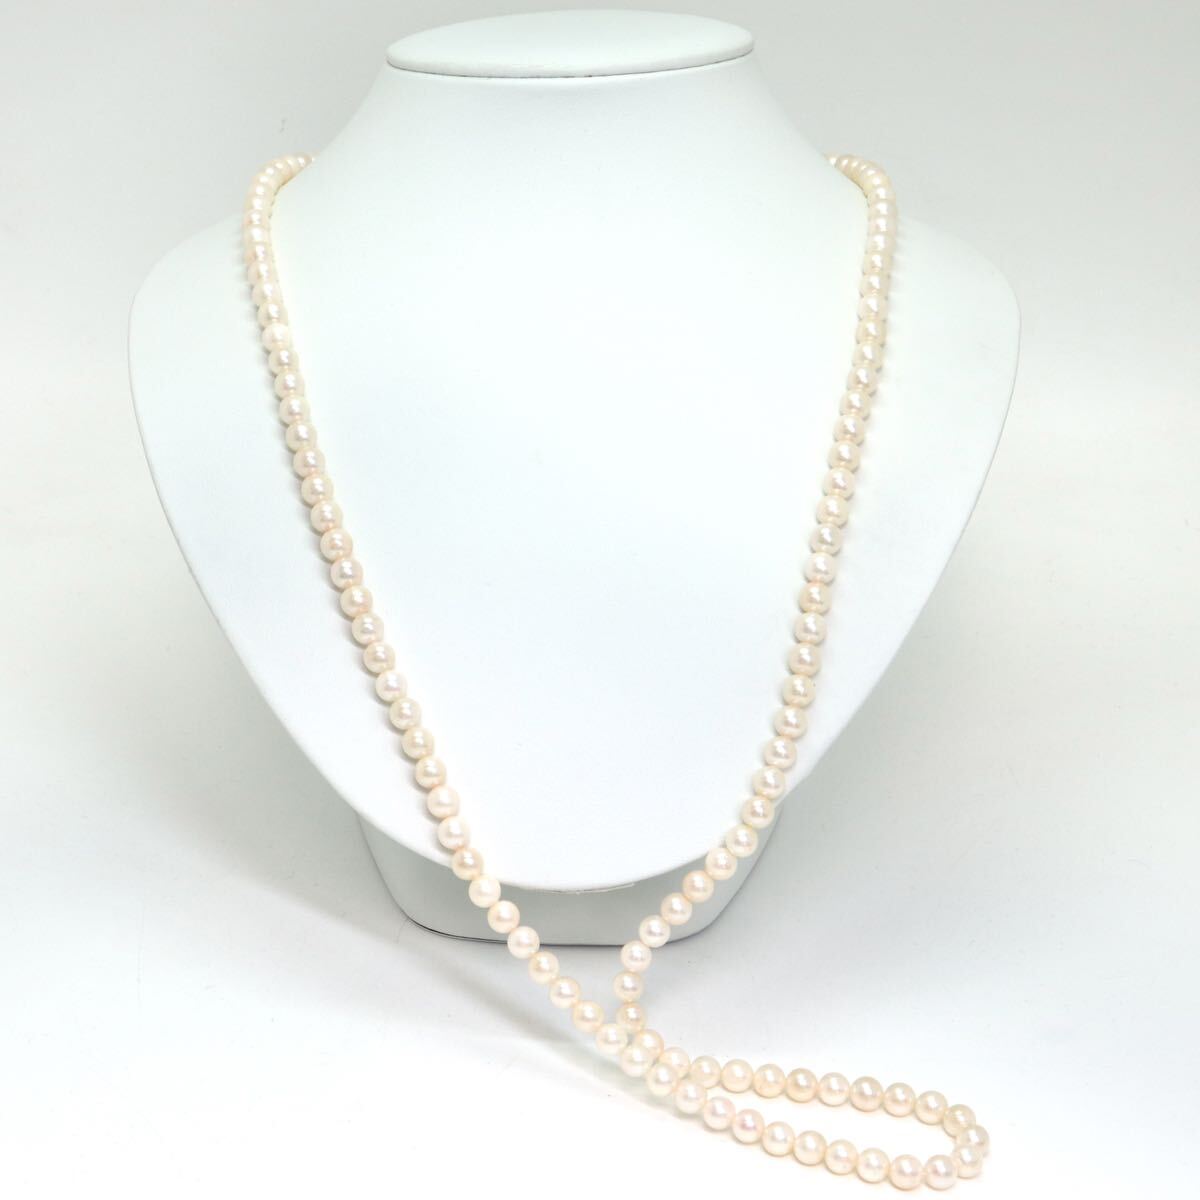 《アコヤ本真珠ロングネックレス》A 約6.5mm珠 54.0g 約81.5cm pearl necklace ジュエリー jewelry DE0/DF0の画像2